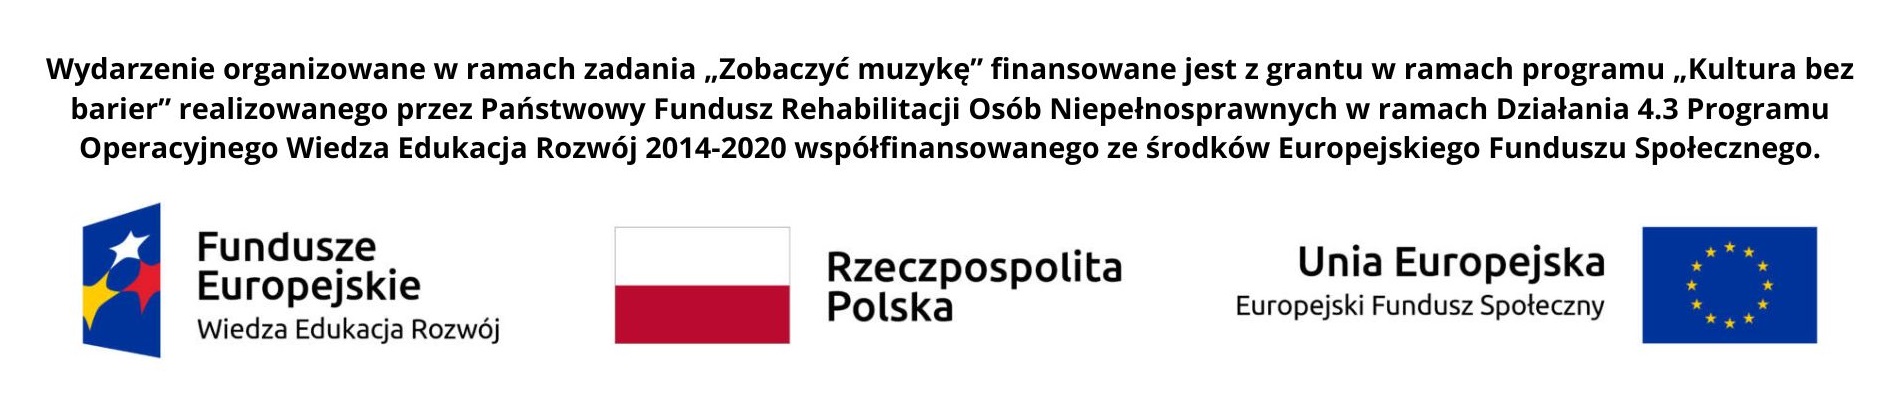 Wydarzenie organizowane w ramach zadania Zobaczyć muzykę finansowane jest z grantu w ramach programu Kultura bez barier realizowanego przez Państwowy Fundusz Rehabilitacji Osób Niepełnosprawnych w ramach Działania 4.3 Programu Operacyjnego Wiedza Edukacja Rozwój 2014-2020współfinansowanegoze środków Europejskiego Funduszu  Społecznego. Logo Fundusze Europejskie Wiedza Edukacja Rozwój, flaga Rzeczpospolita Polska, flaga Unia Europejska Europejski Fundusz Społeczny